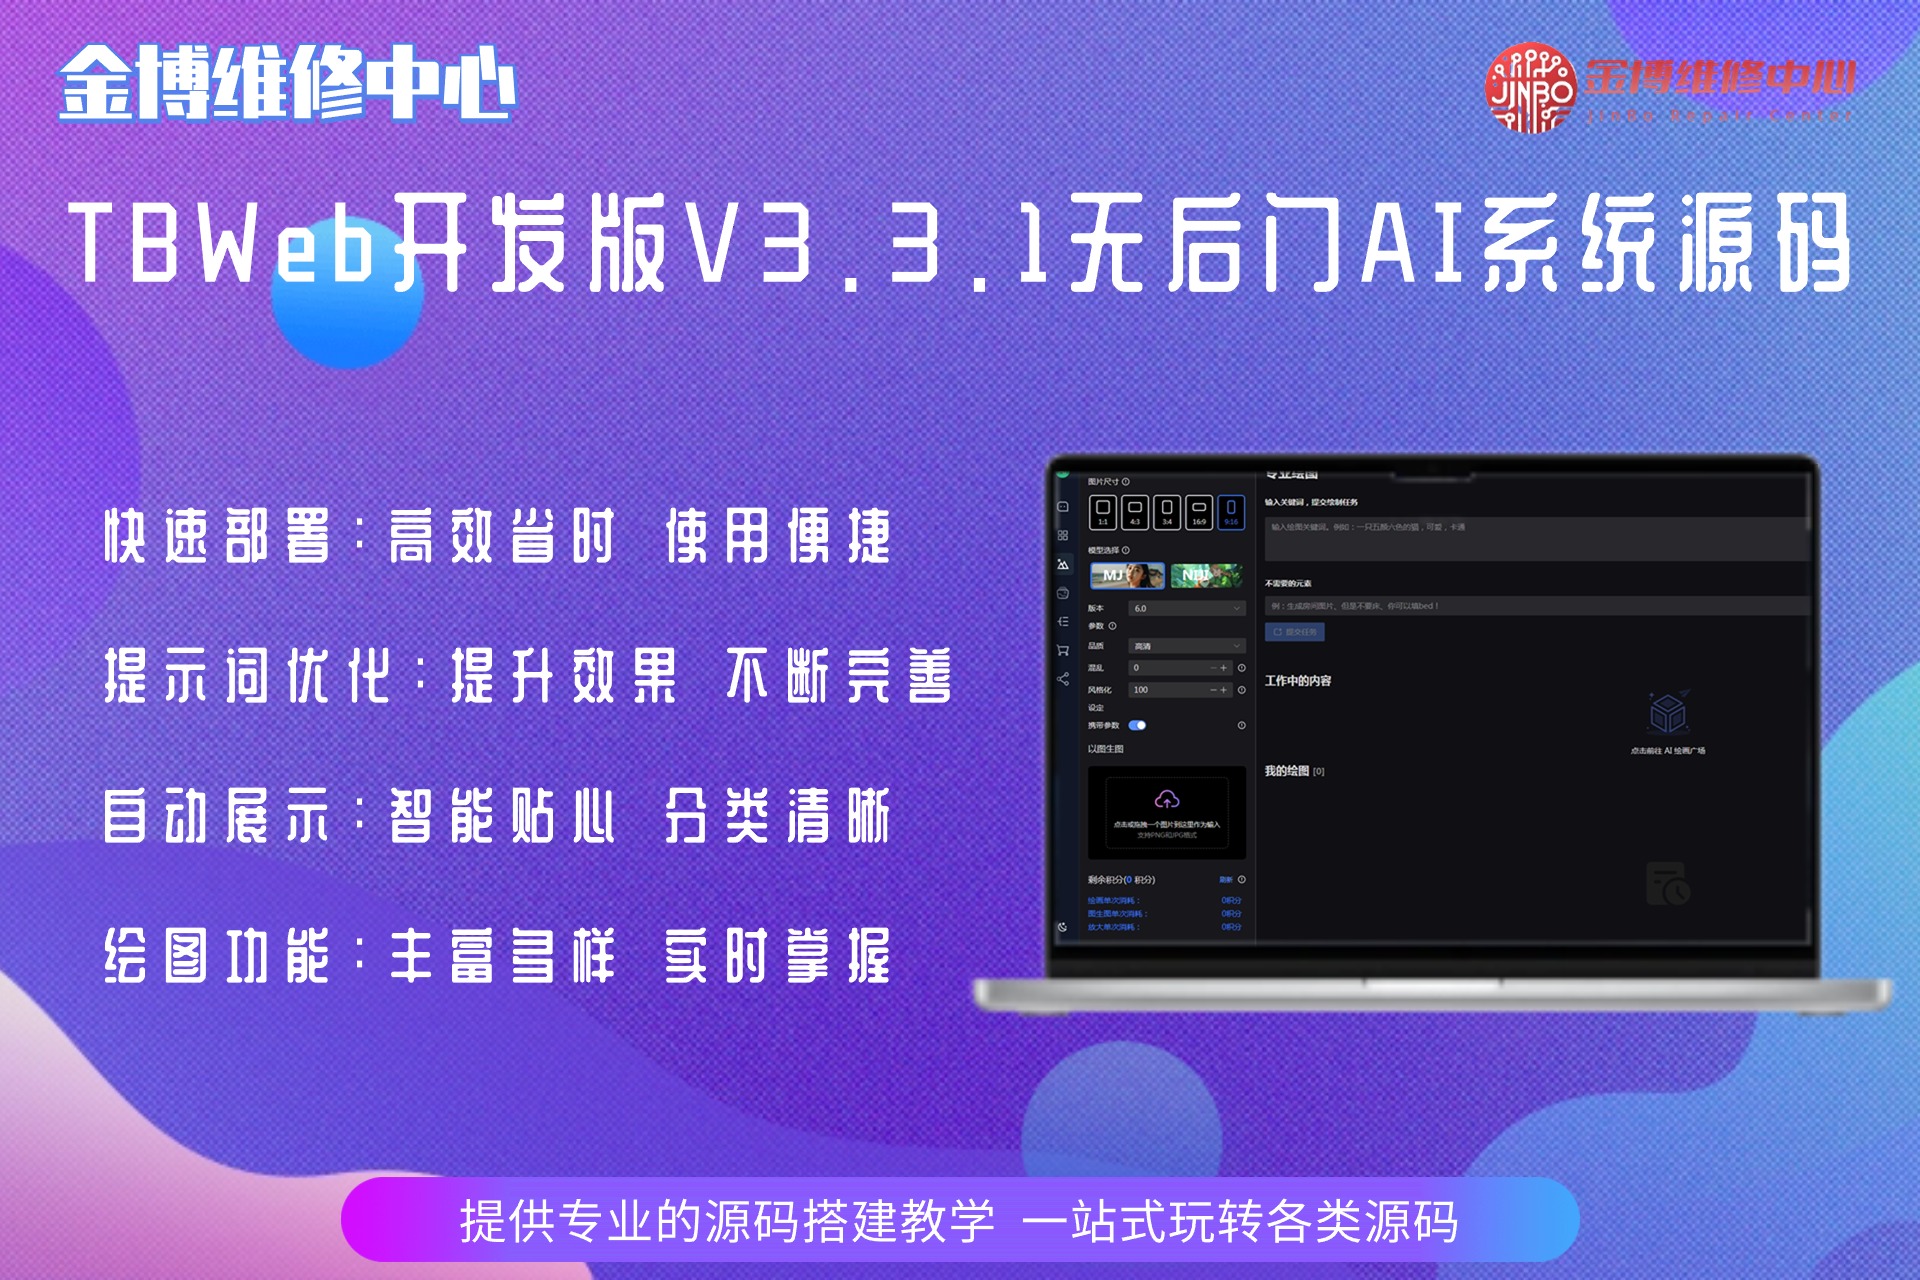 TBWeb开发版V3.3.1免授权无后门AI系统源码下载及详细安装教程 B54-北京金博维修中心